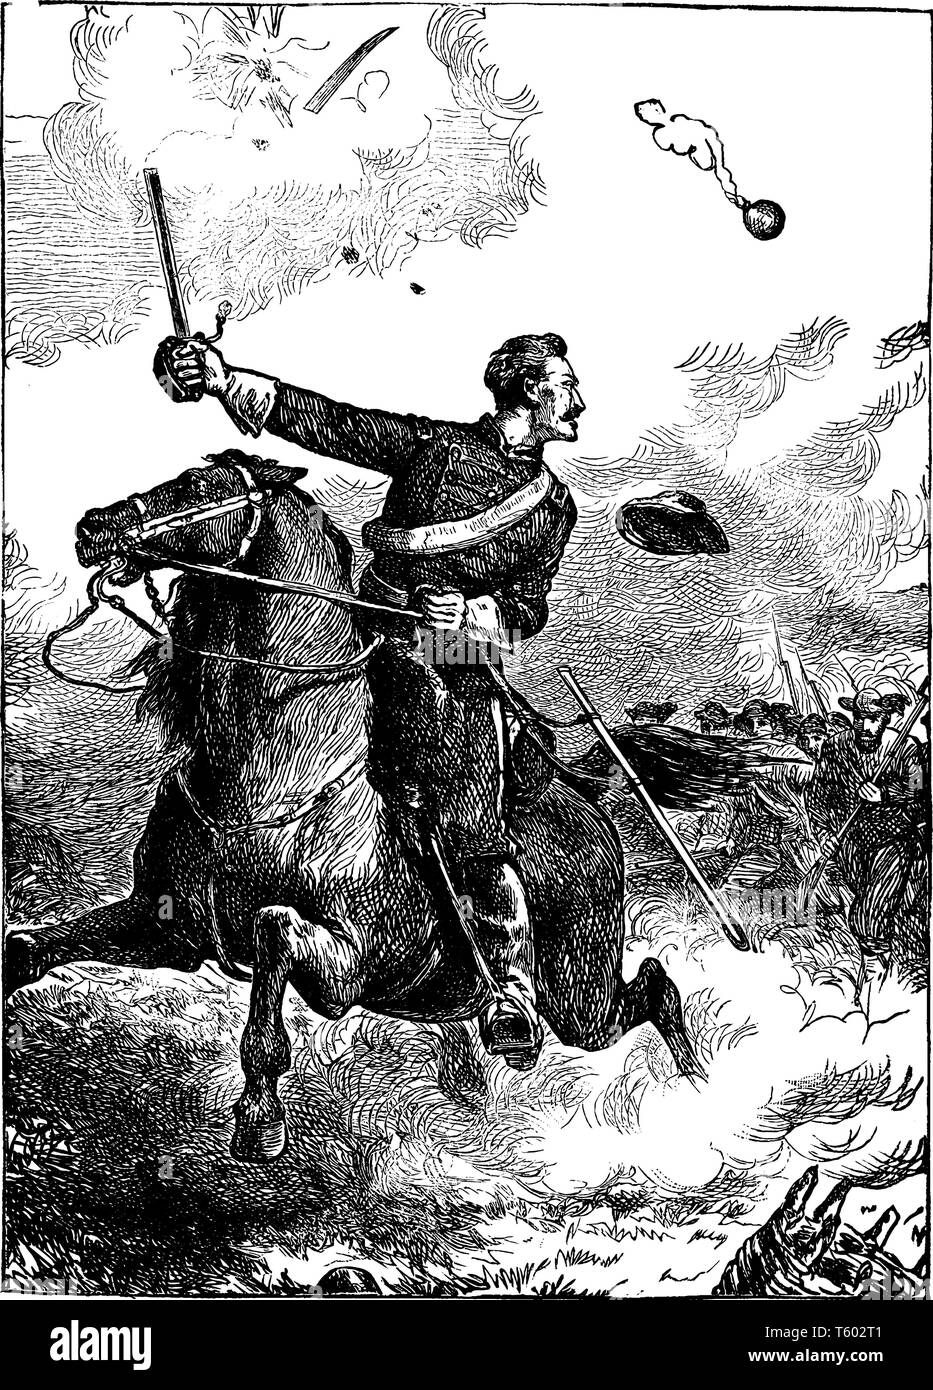 Ein Soldat führenden eine Gebühr auf Pferd, vintage Strichzeichnung oder Gravur Abbildung Stock Vektor